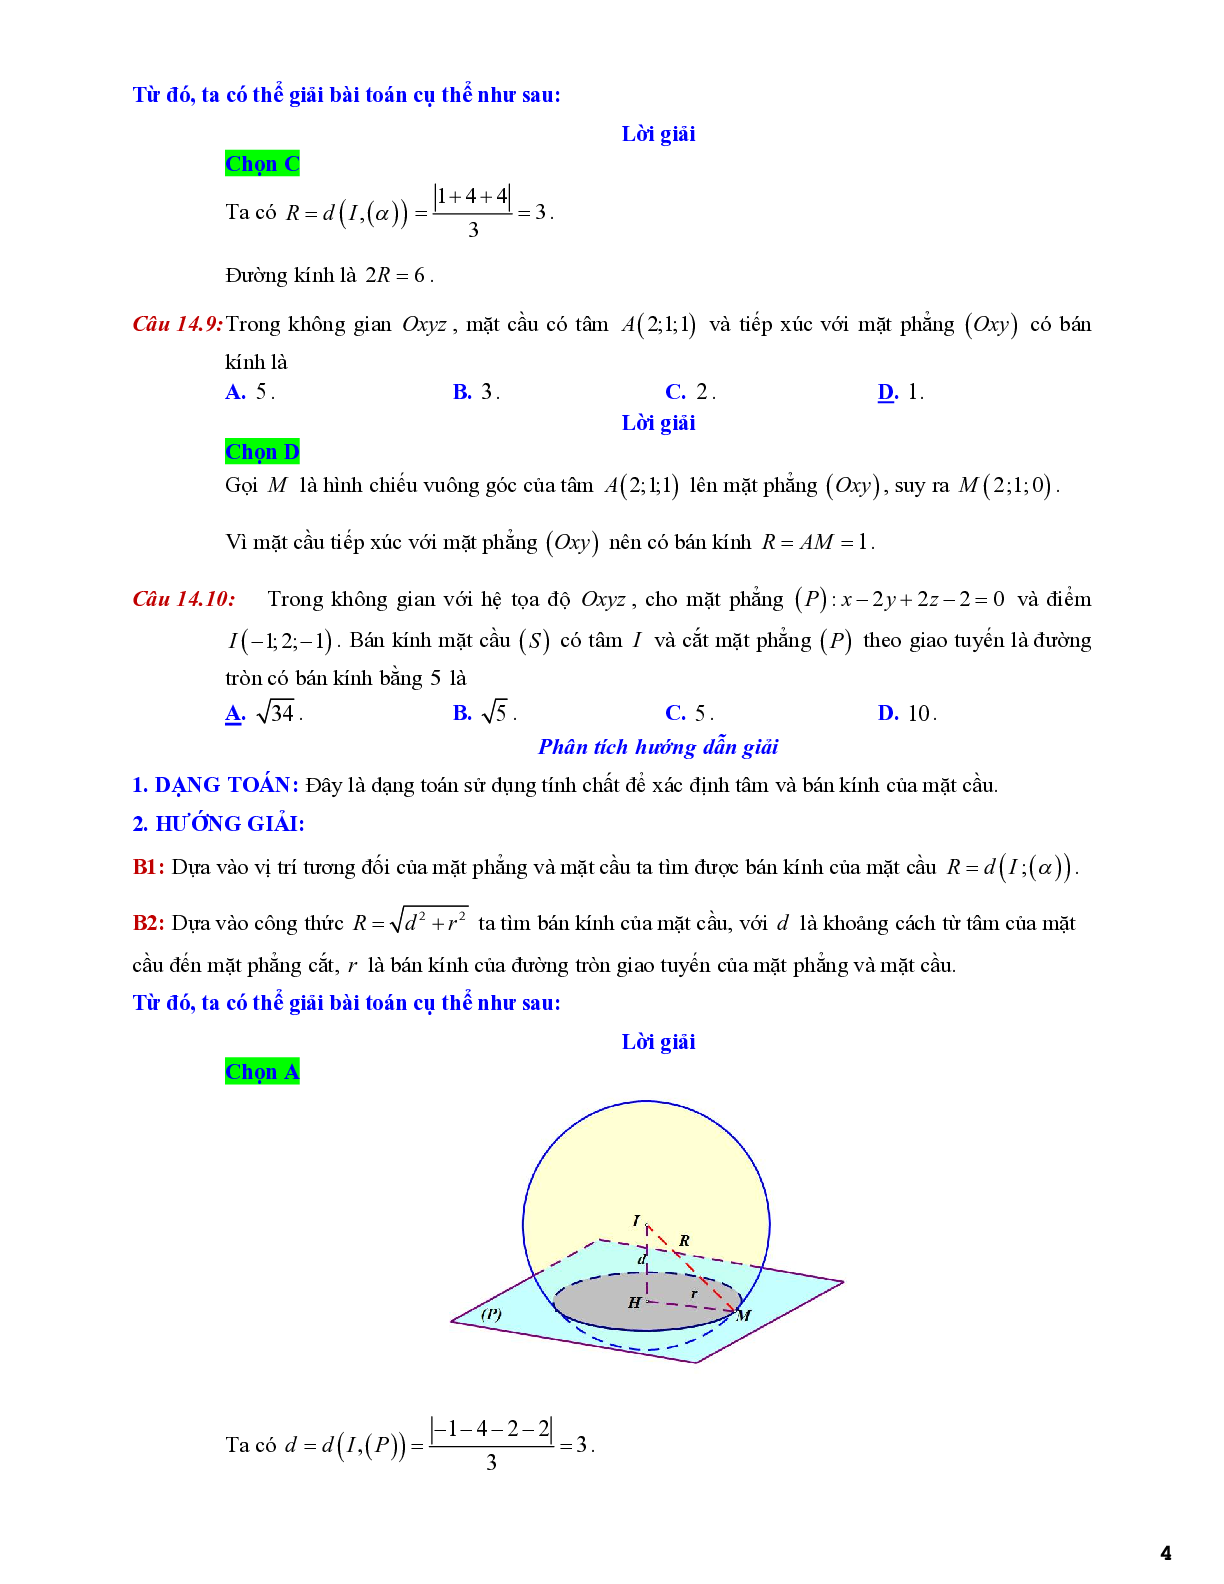 Bài tập xác định tâm, bán kính, diện tích và thể tích của mặt cầu (trang 4)